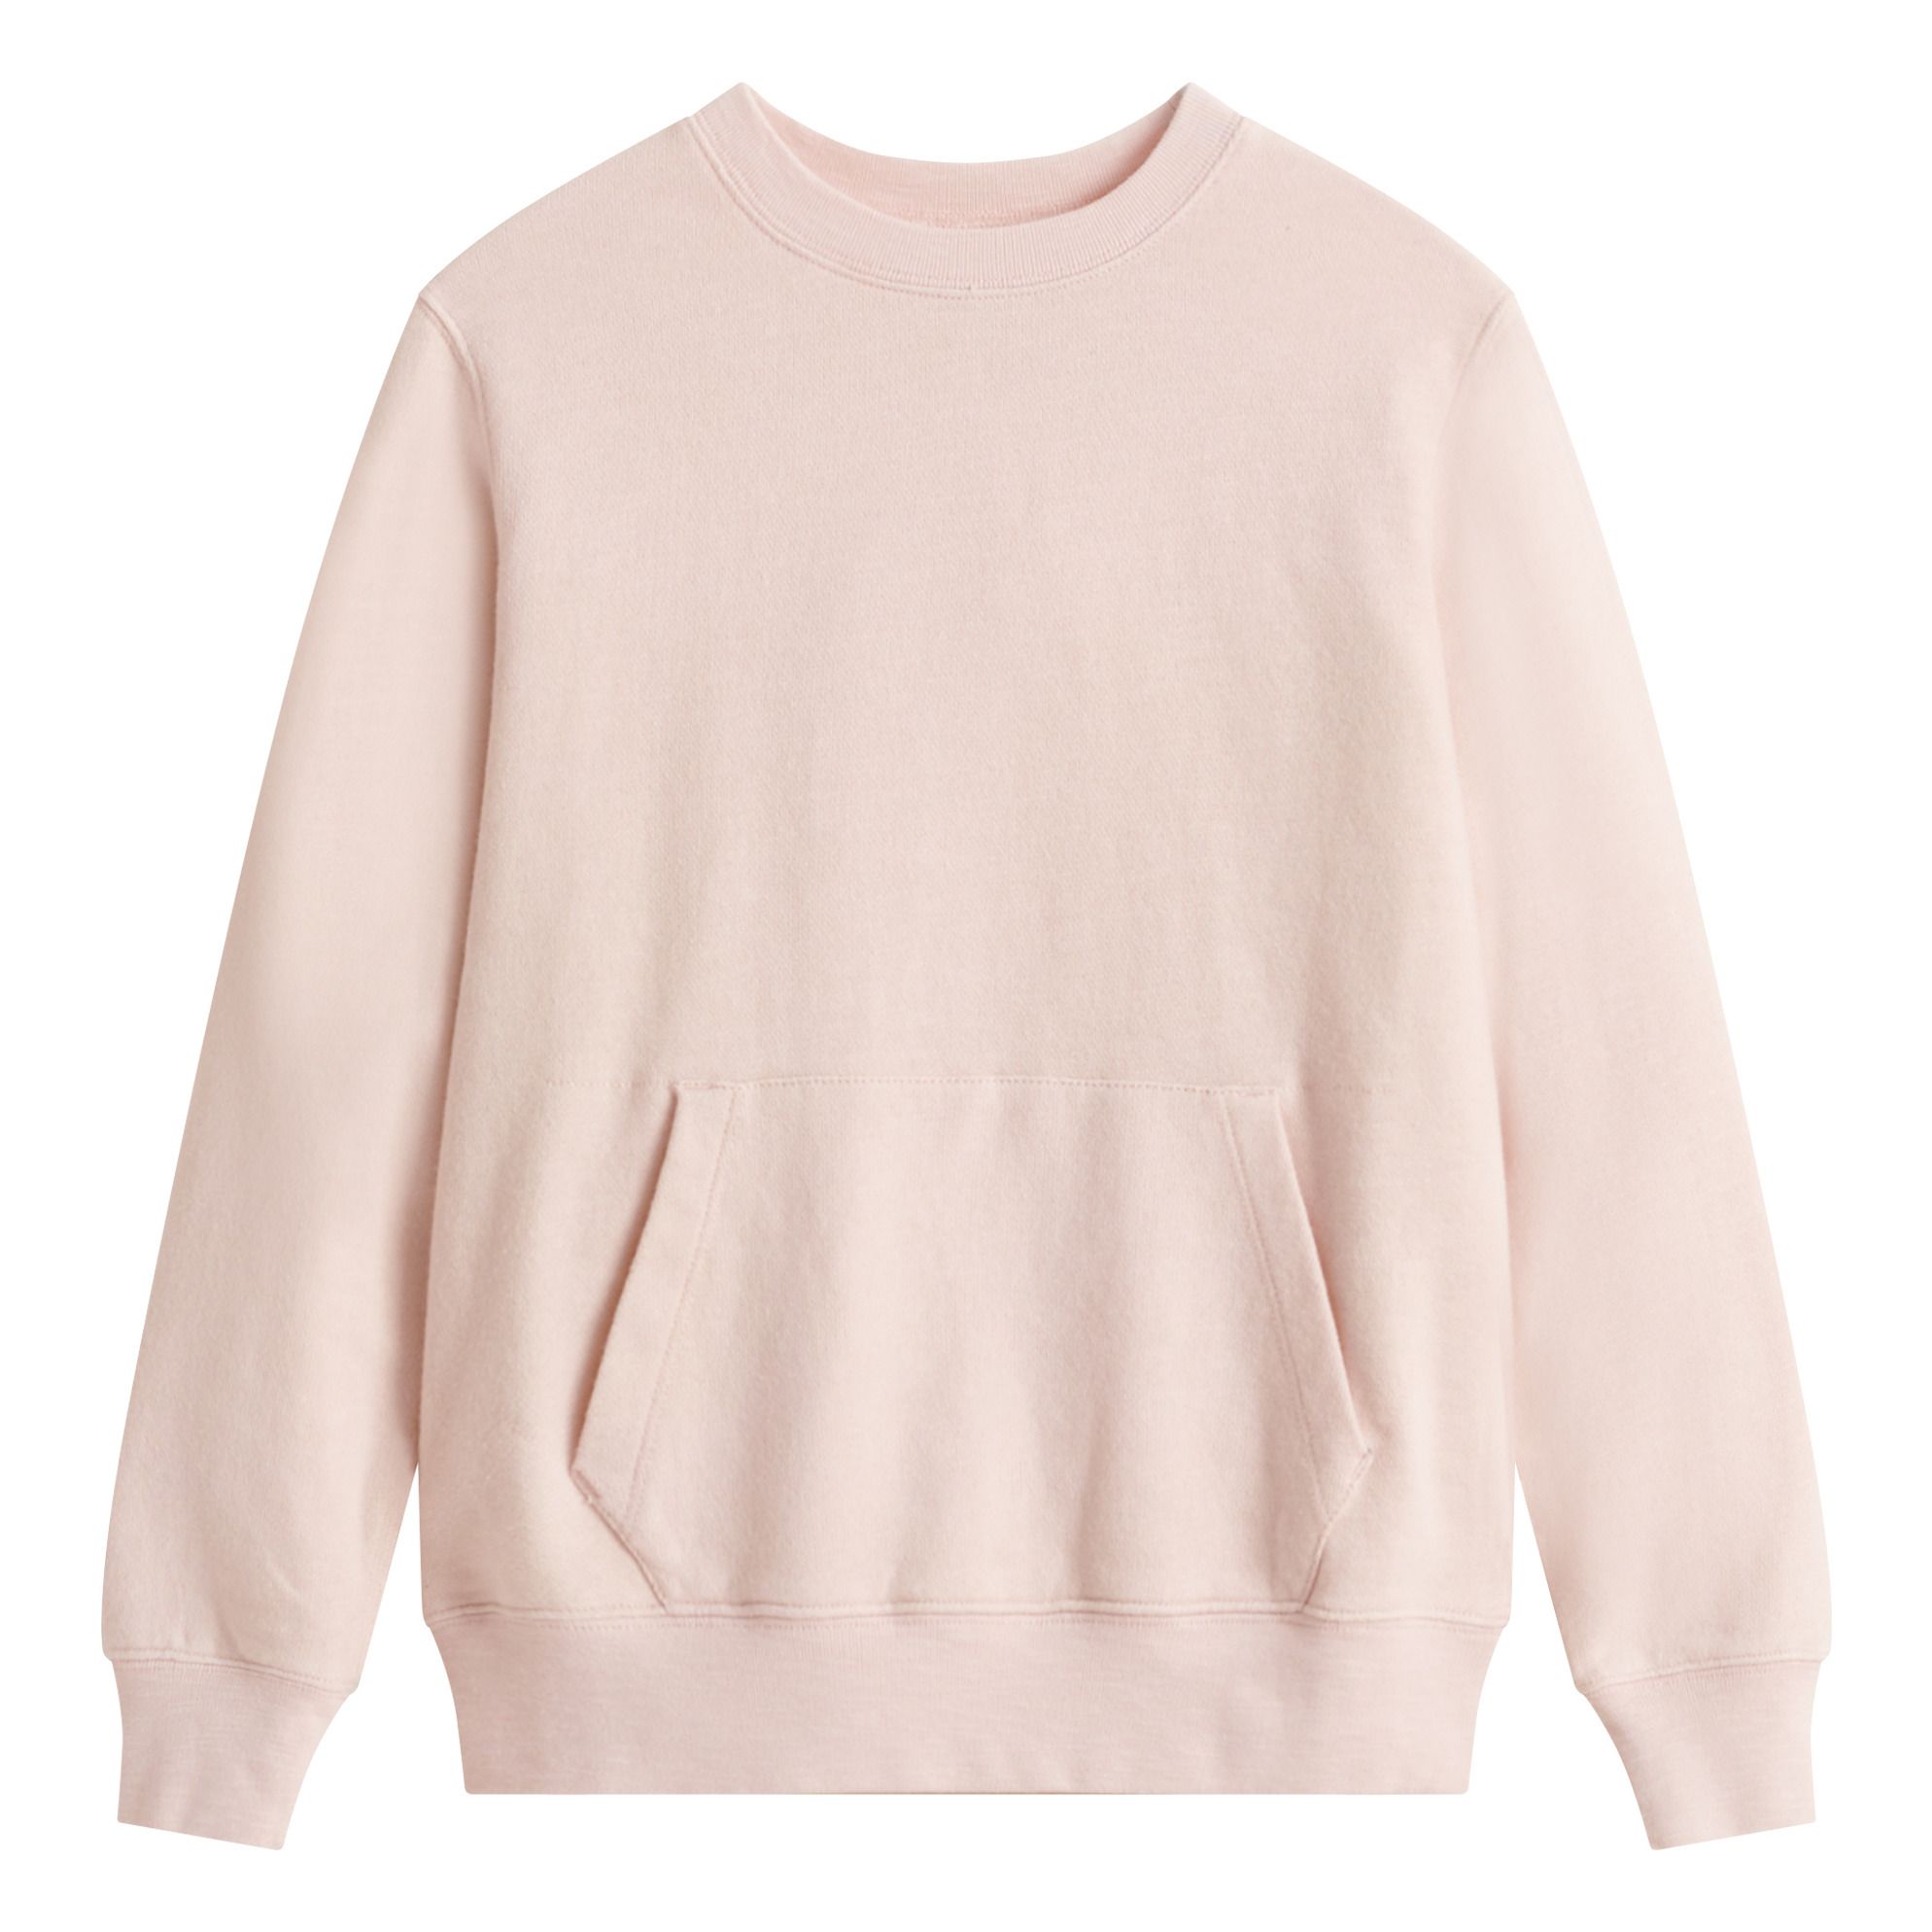 Fax Kangaroo Pocket Sweatshirt Powder pink Bellerose Fashion Teen